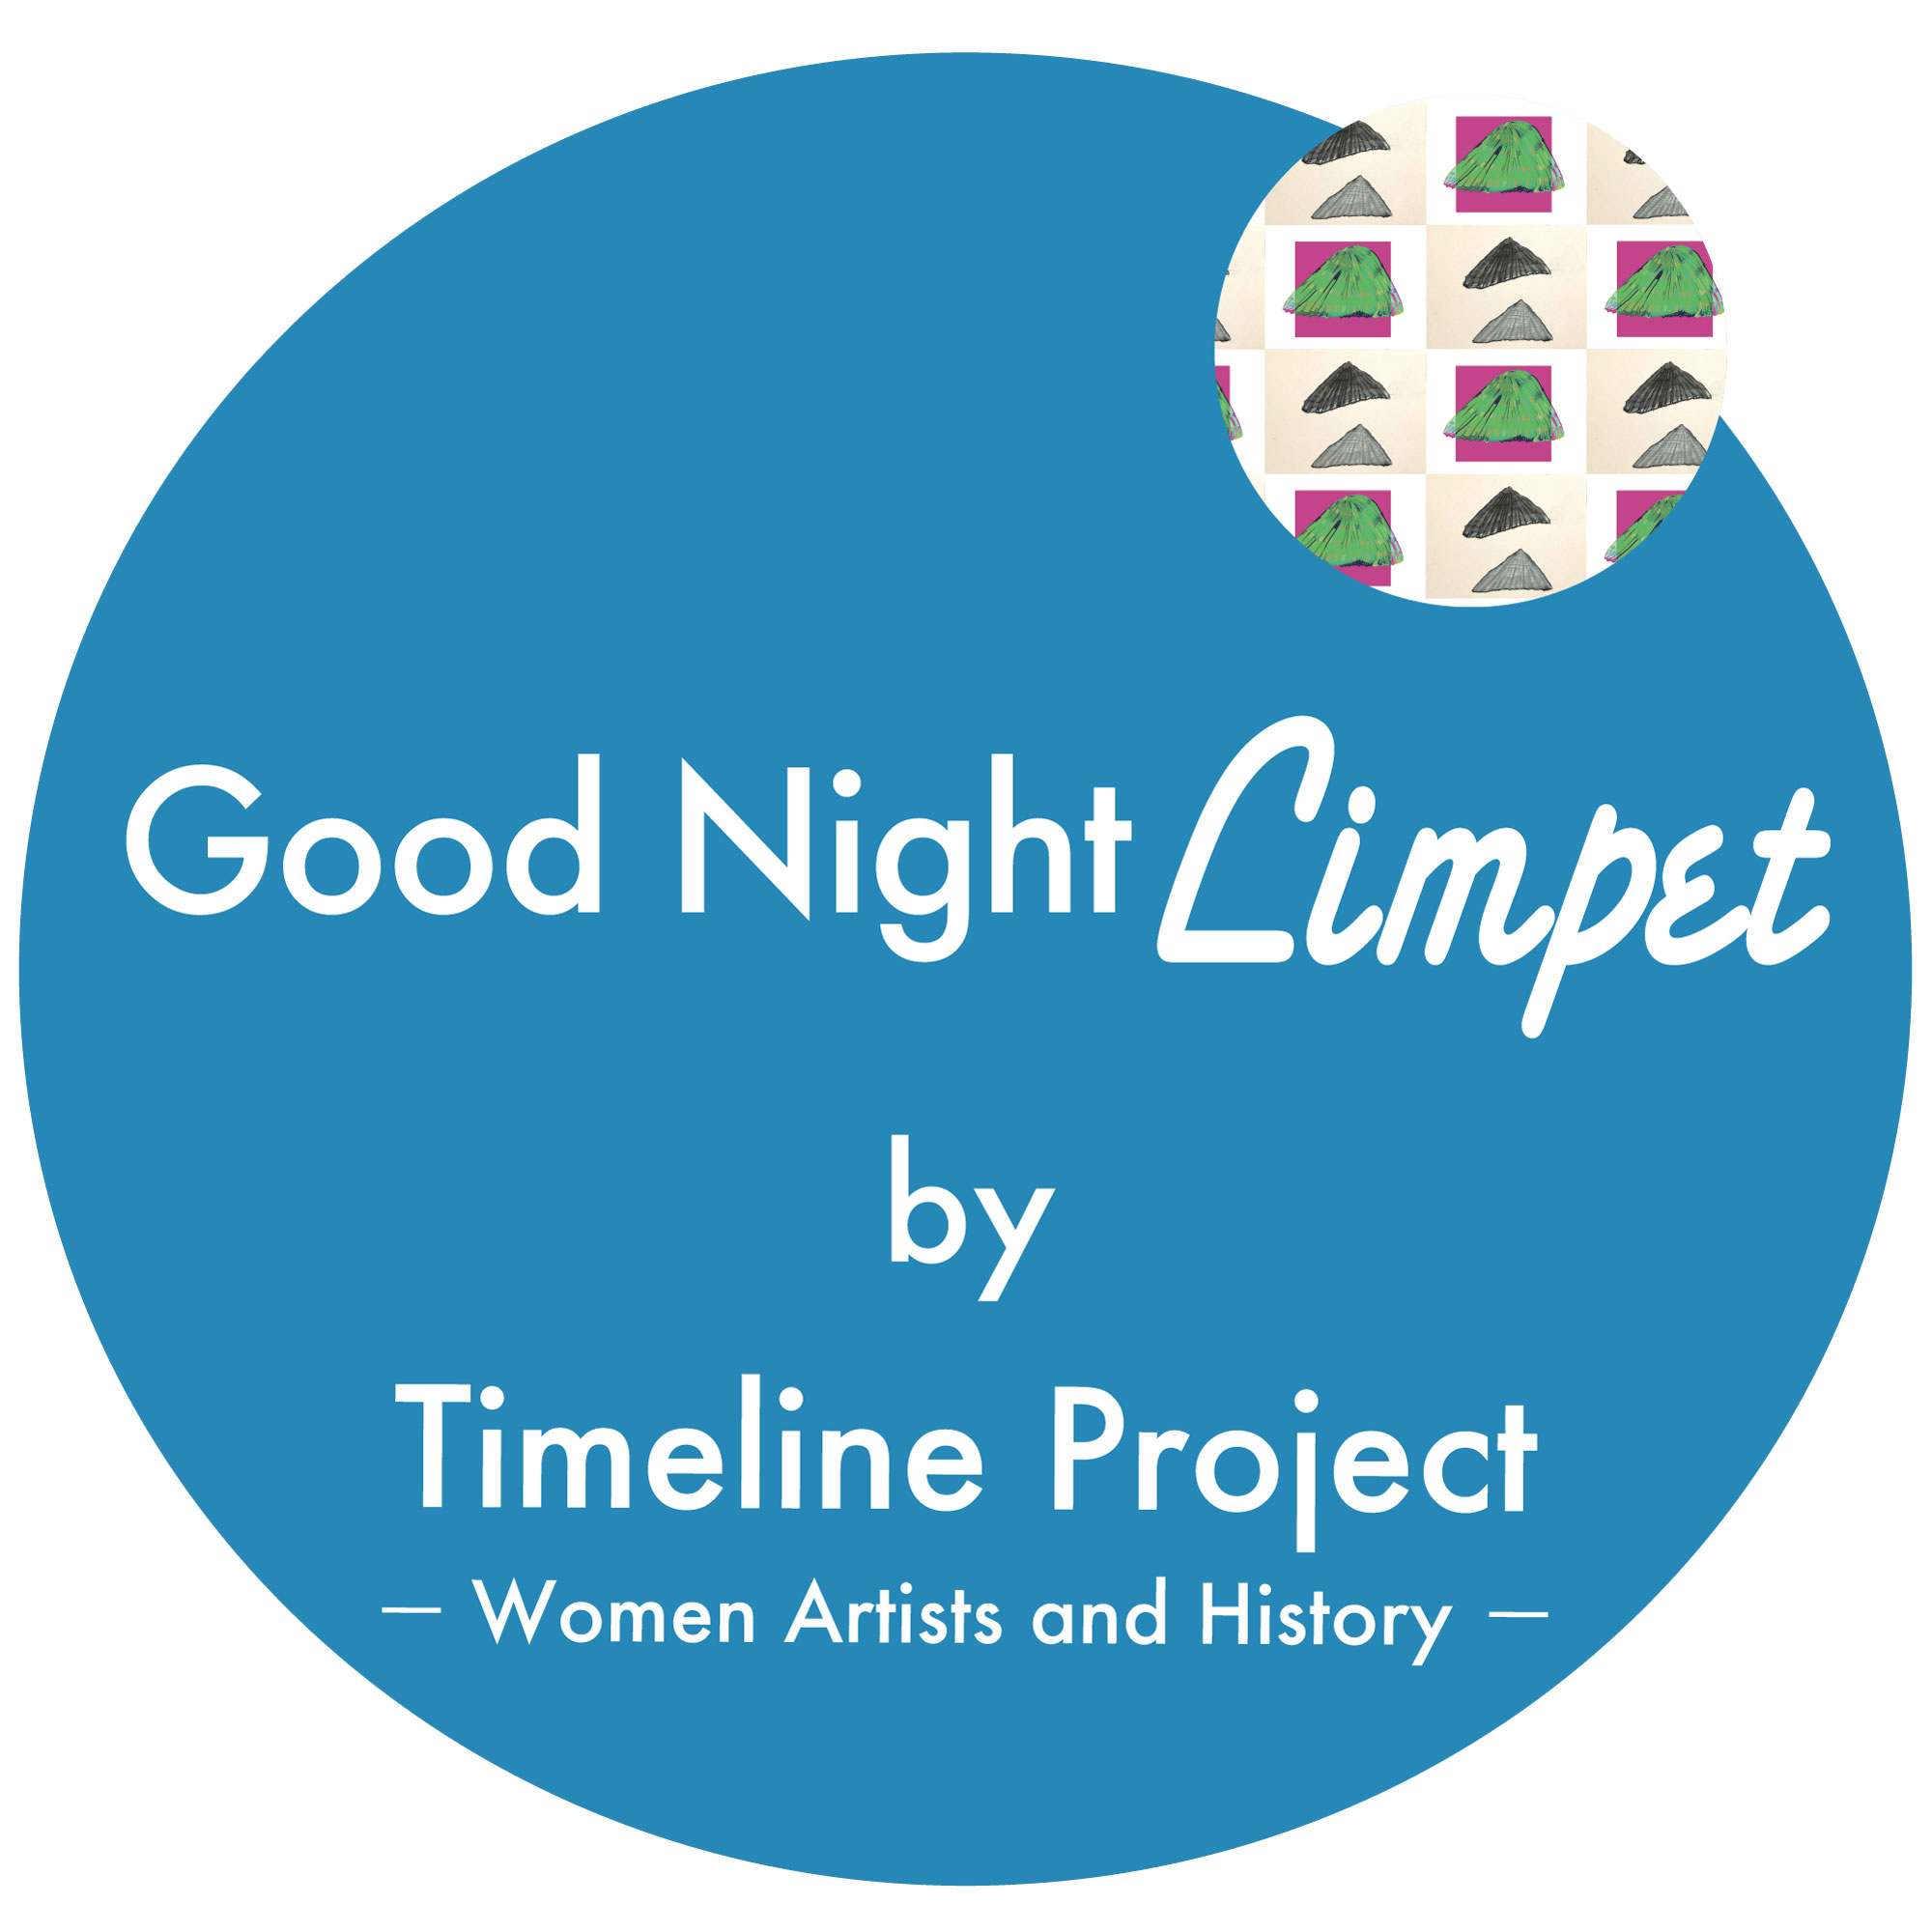 「Timeline Project」のポッドキャスト「Good Night Limpt」